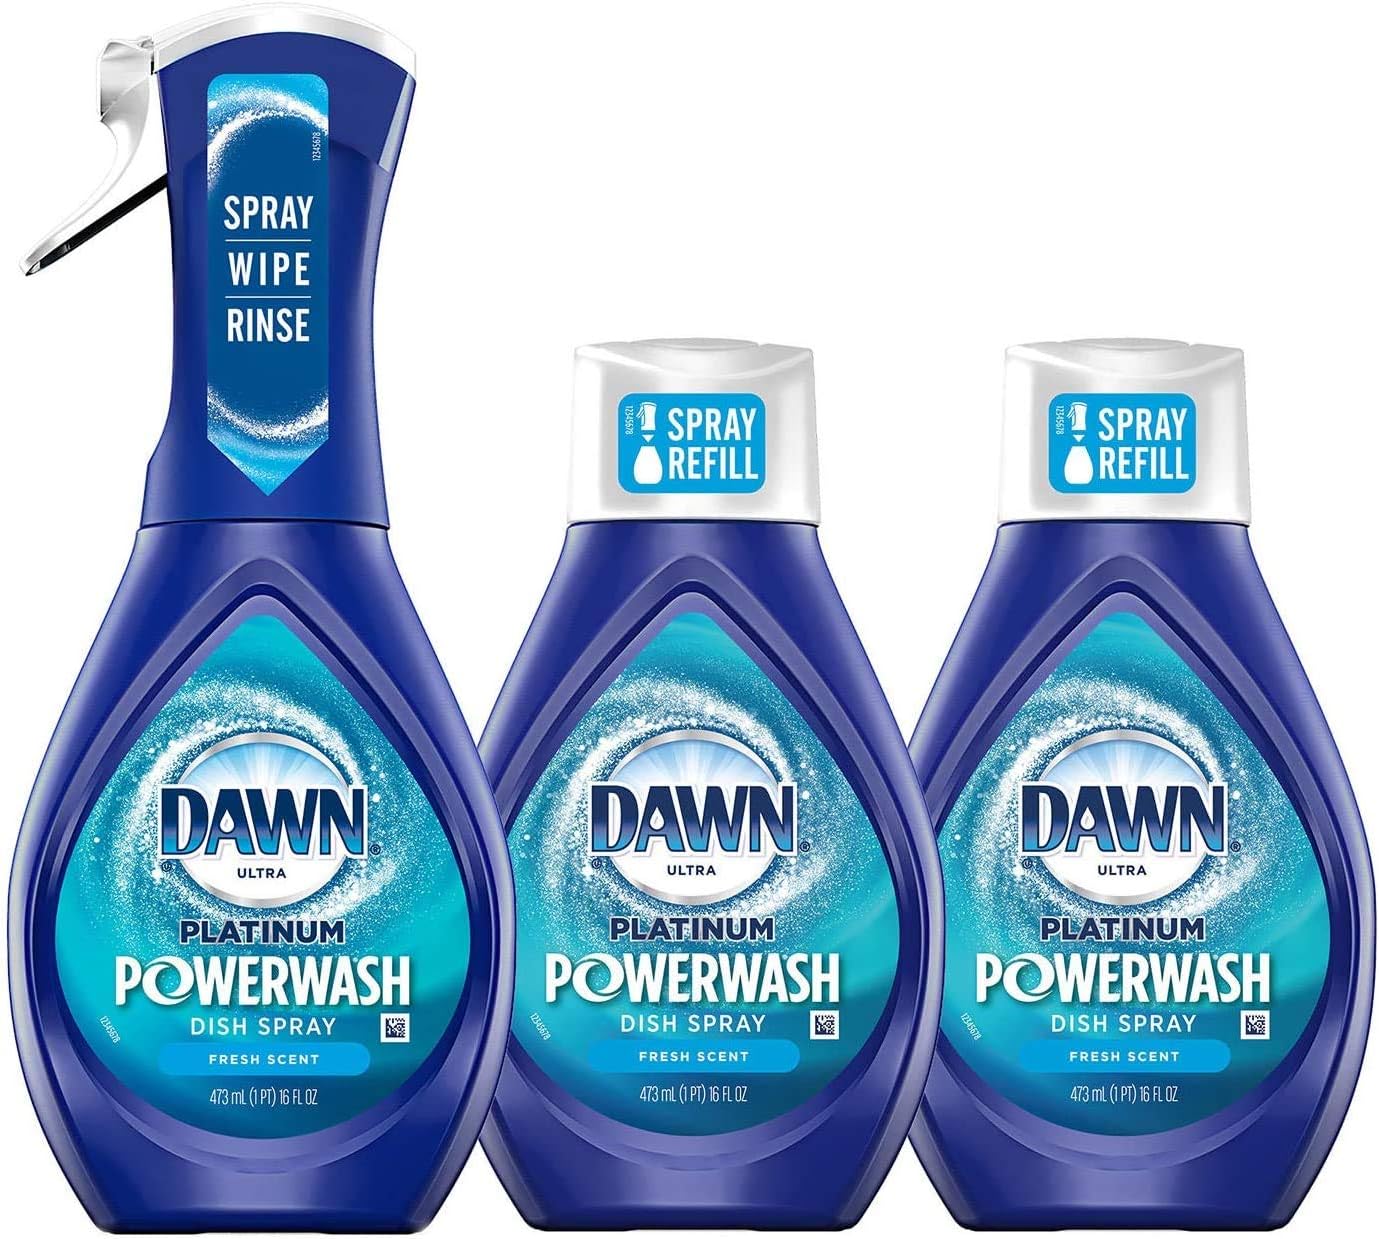 Sie können Ihr eigenes Dawn Powerwash-Rezept zu Hause mit minimalen Zutaten erstellen